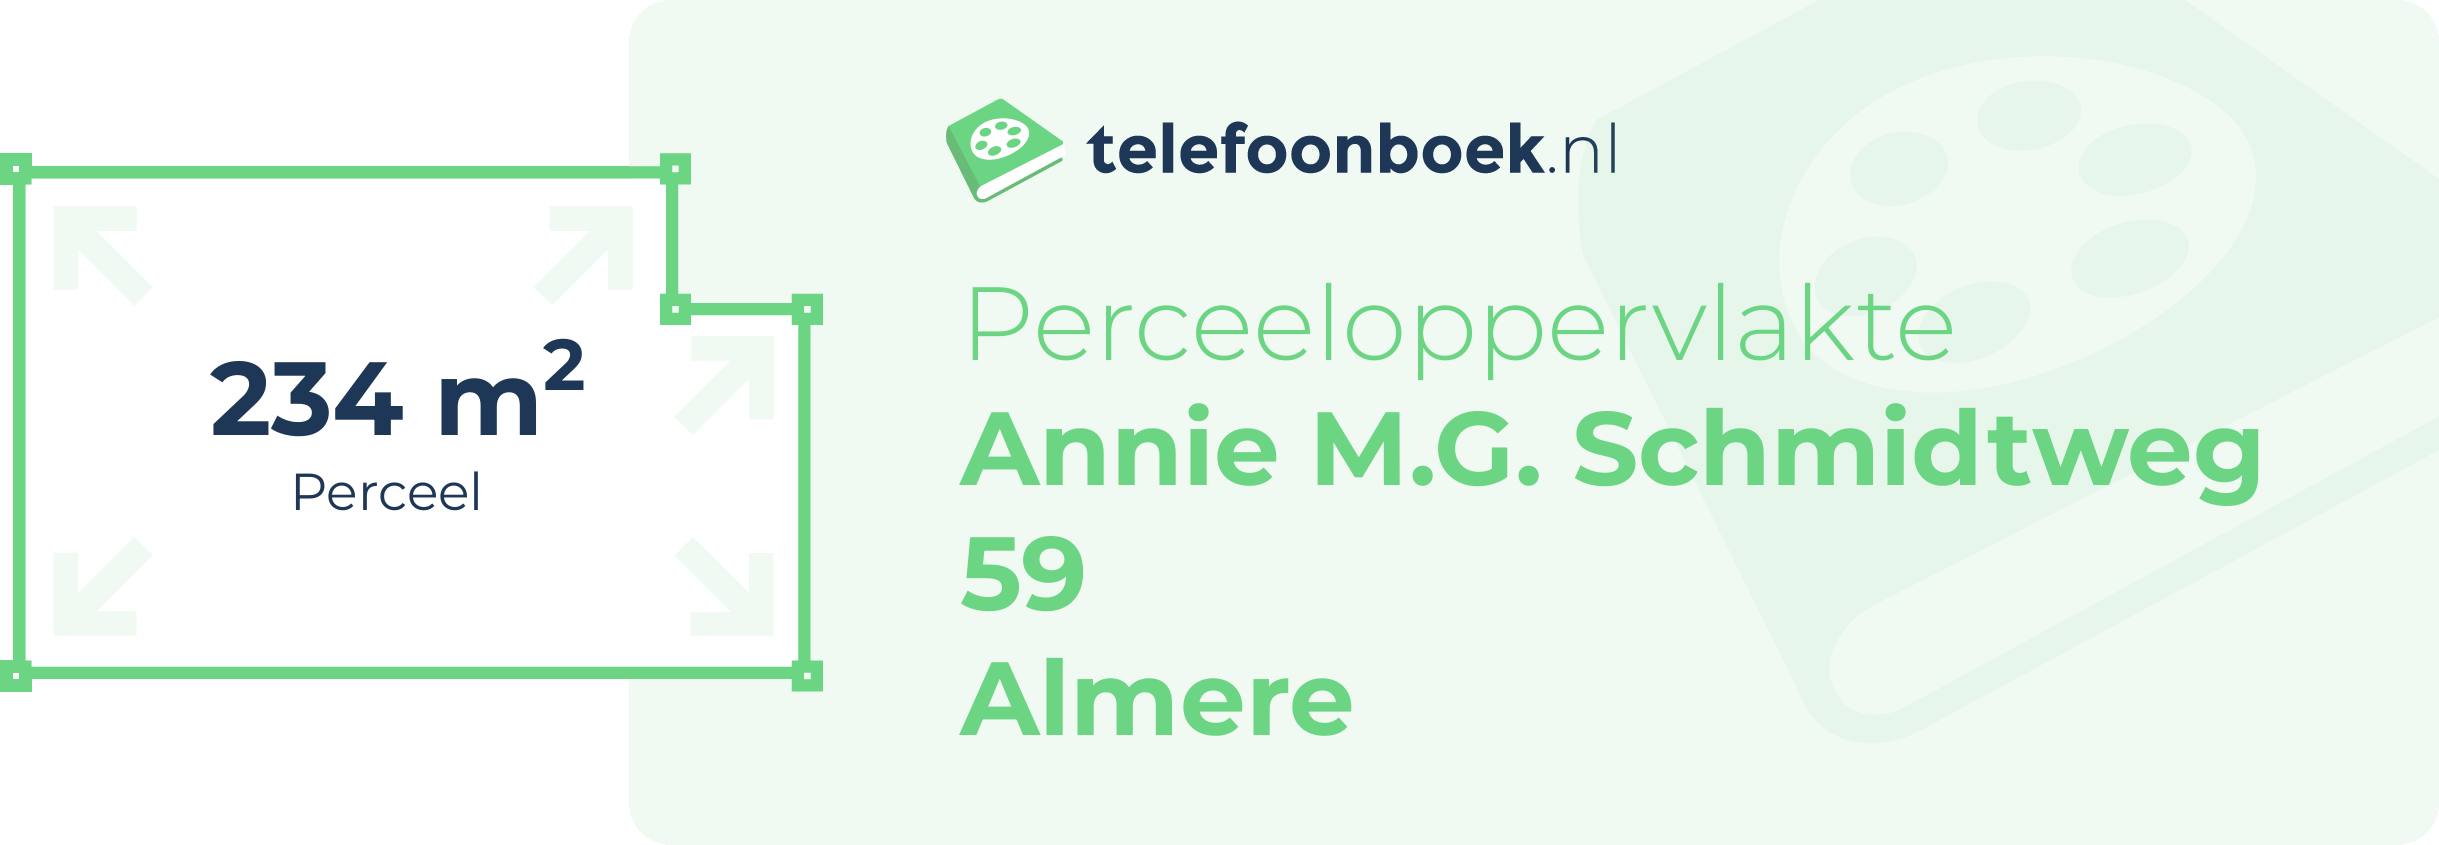 Perceeloppervlakte Annie M.G. Schmidtweg 59 Almere